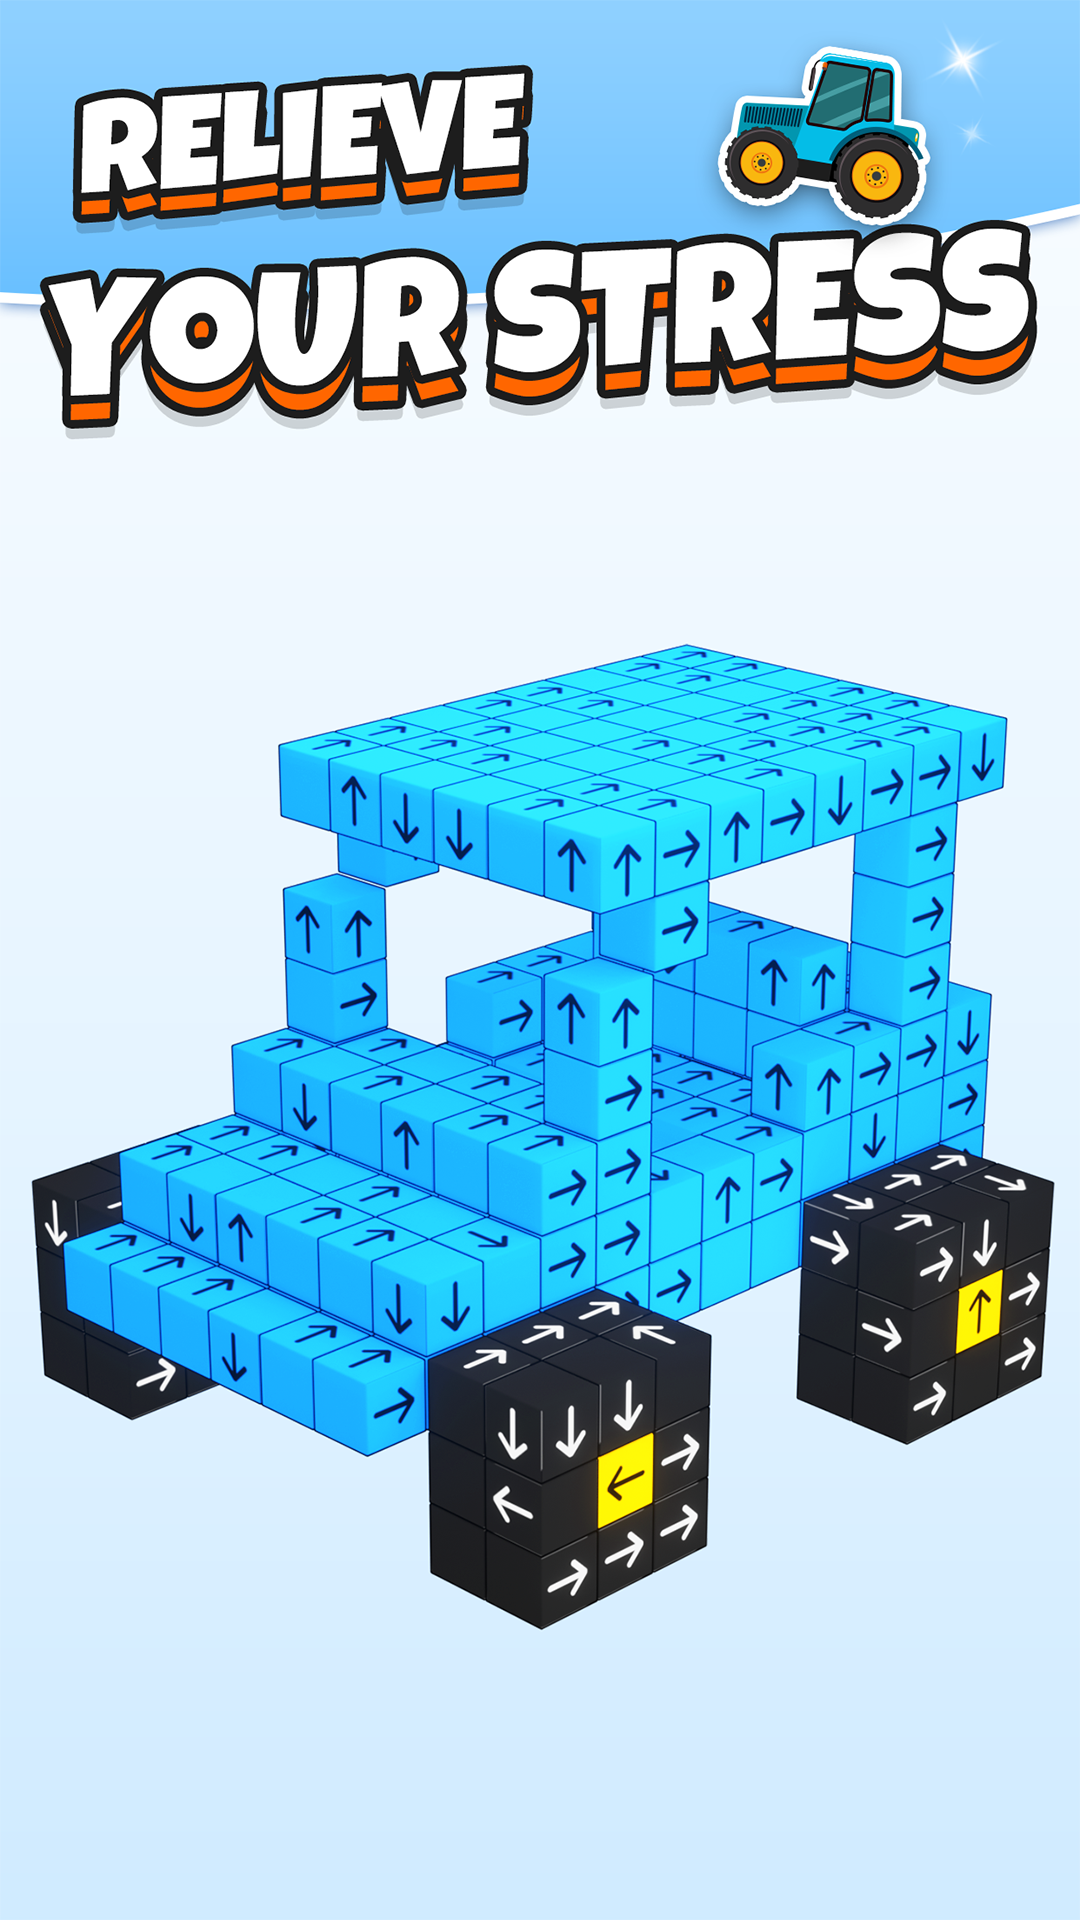 Tap Out - Take 3D Blocks Away screenshot game